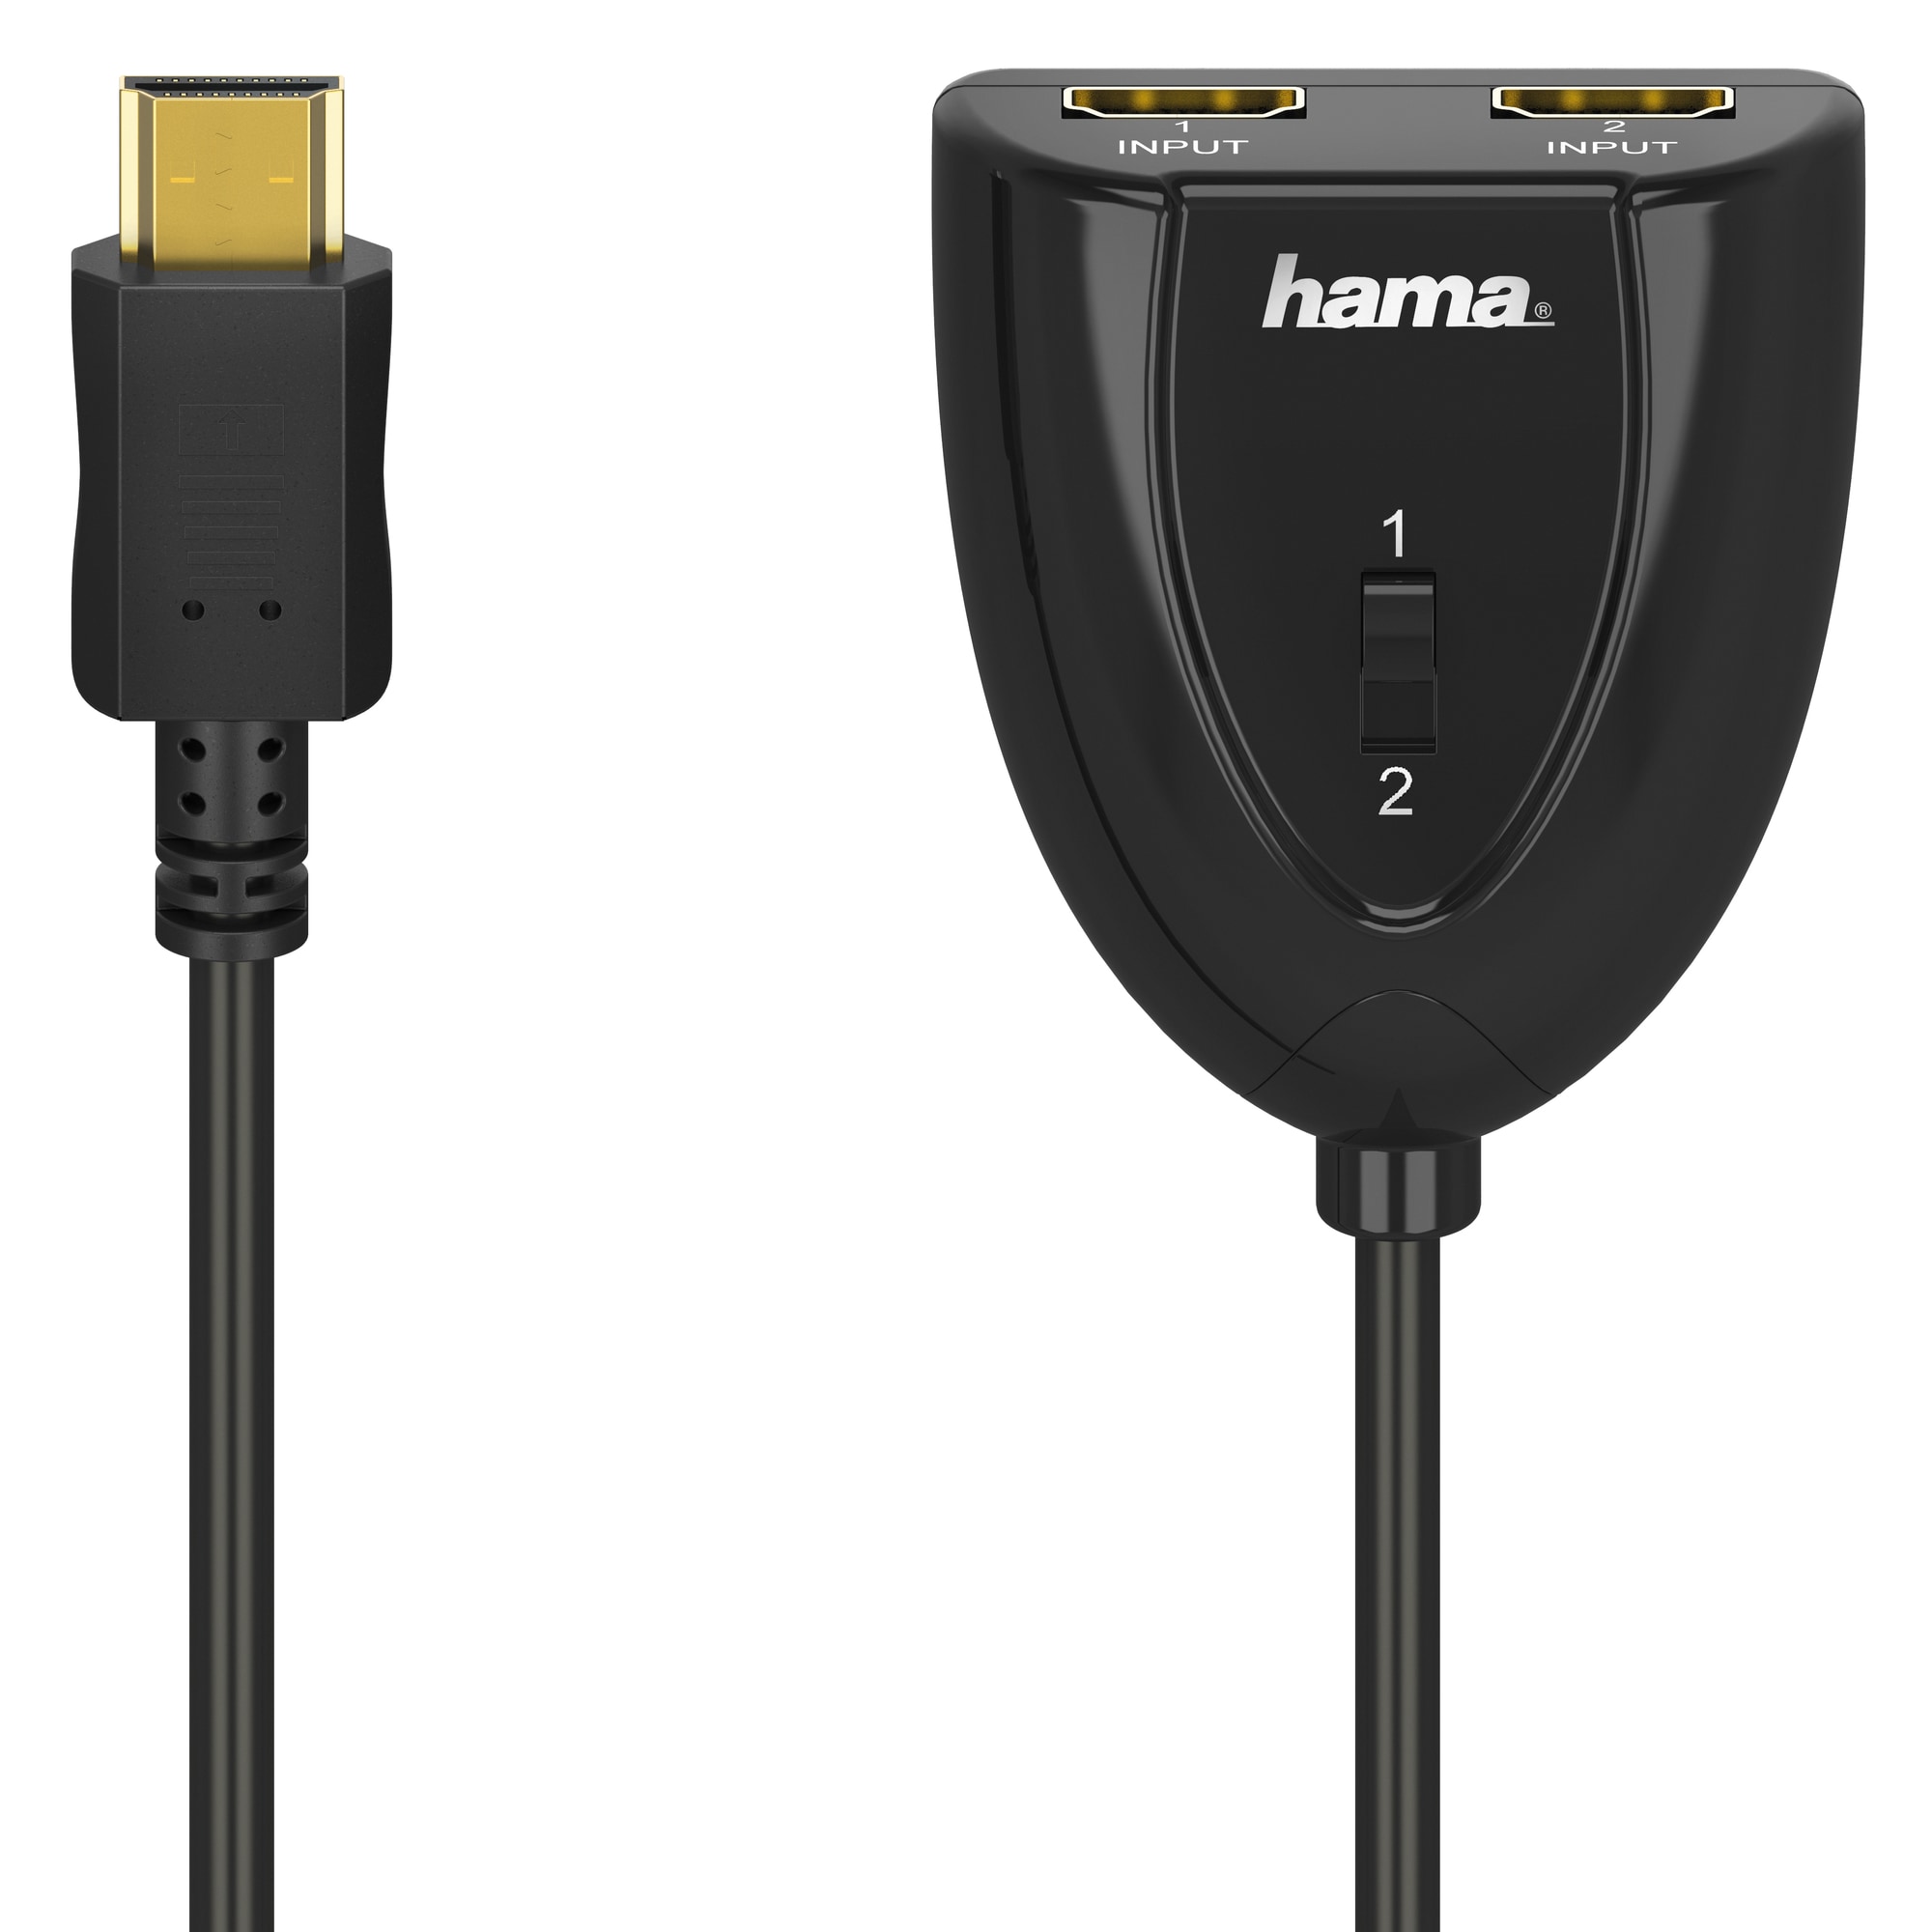 Hama 2x1 HDMI kytkin - Gigantti verkkokauppa